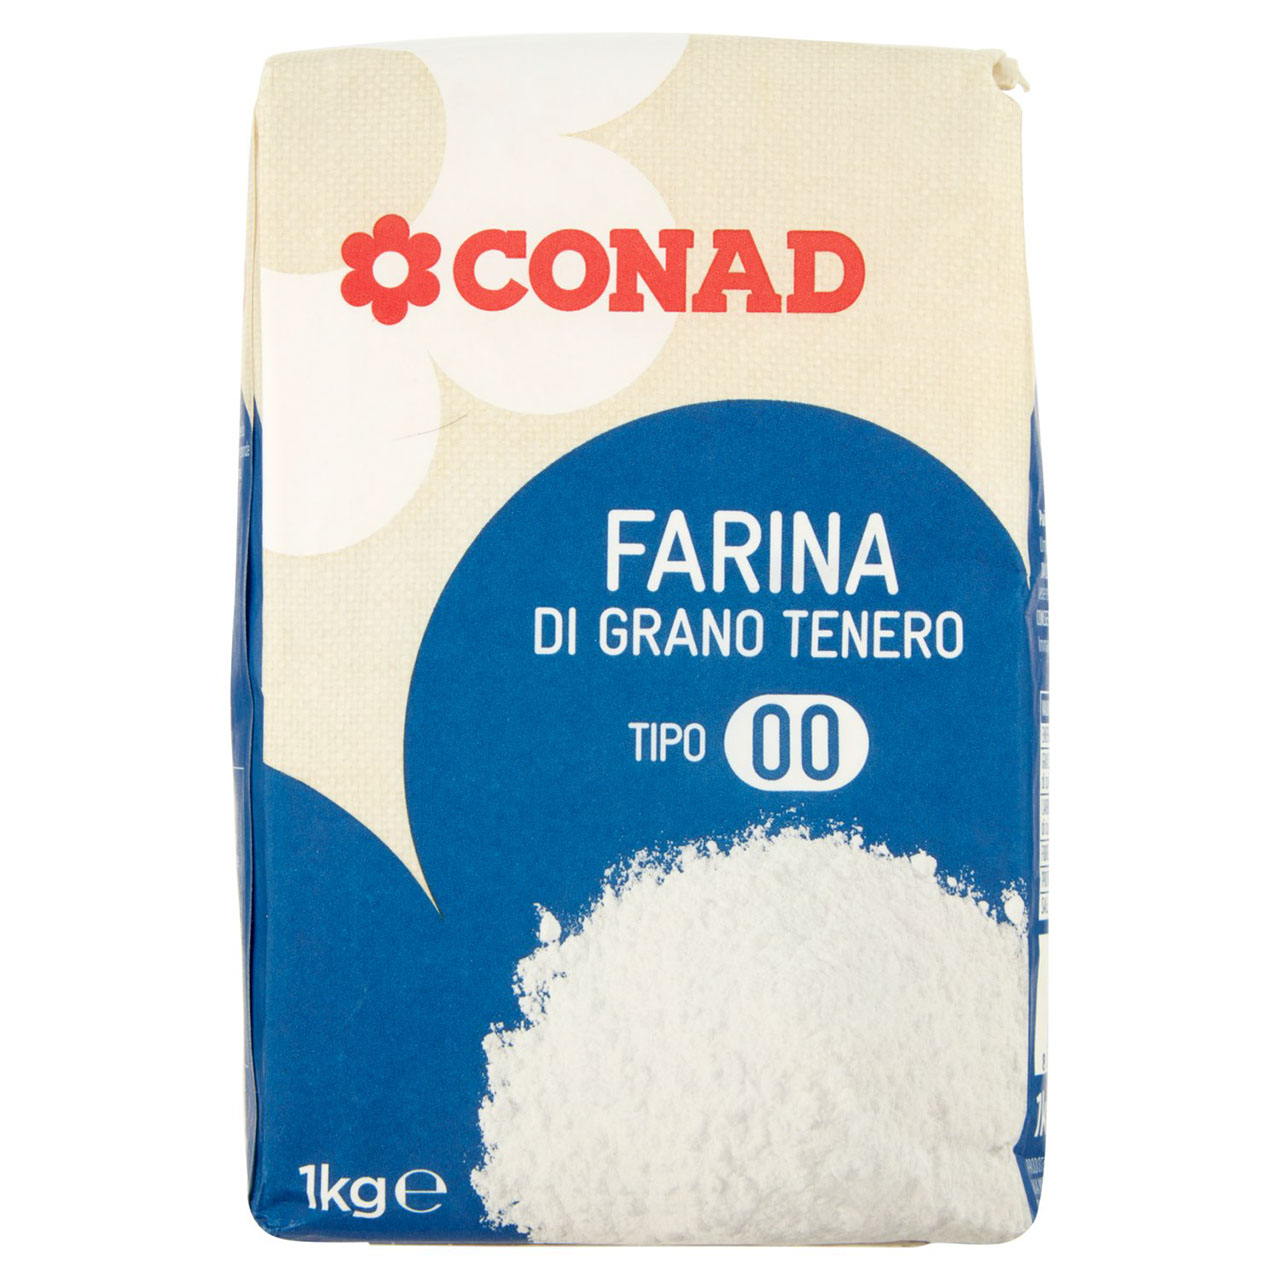 Farina di grano tenero Tipo 00 1 kg Conad online | Conad